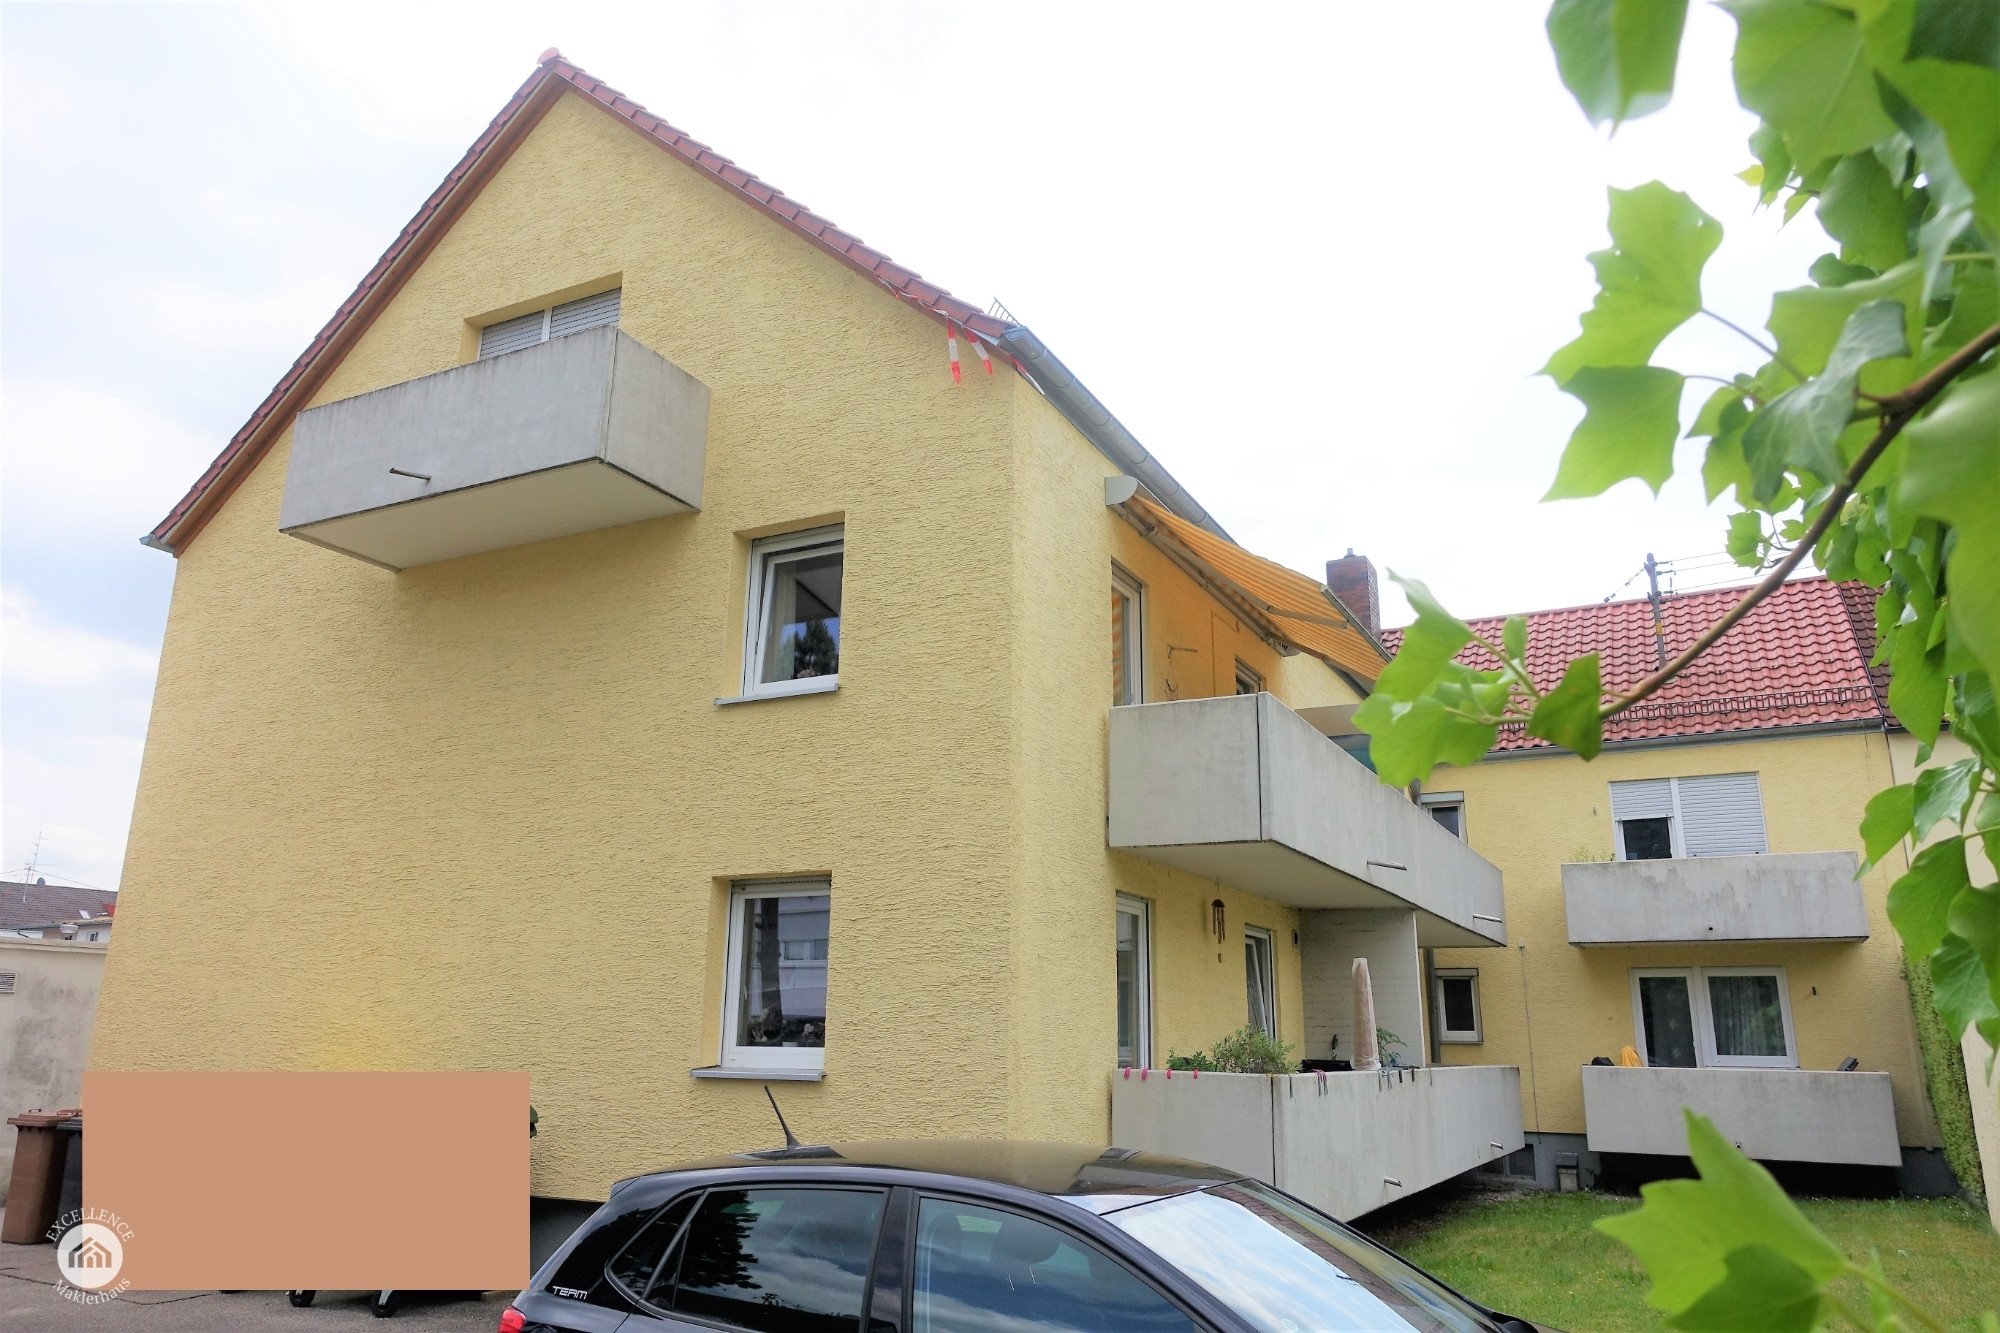 Immobilienangebot - Augsburg / Hochzoll-Süd - Alle - *Schöner Wohnen* 2 Zimmer Wohnung mit Balkon in Top Lage nahe Kuhsee und Autobahn A 8